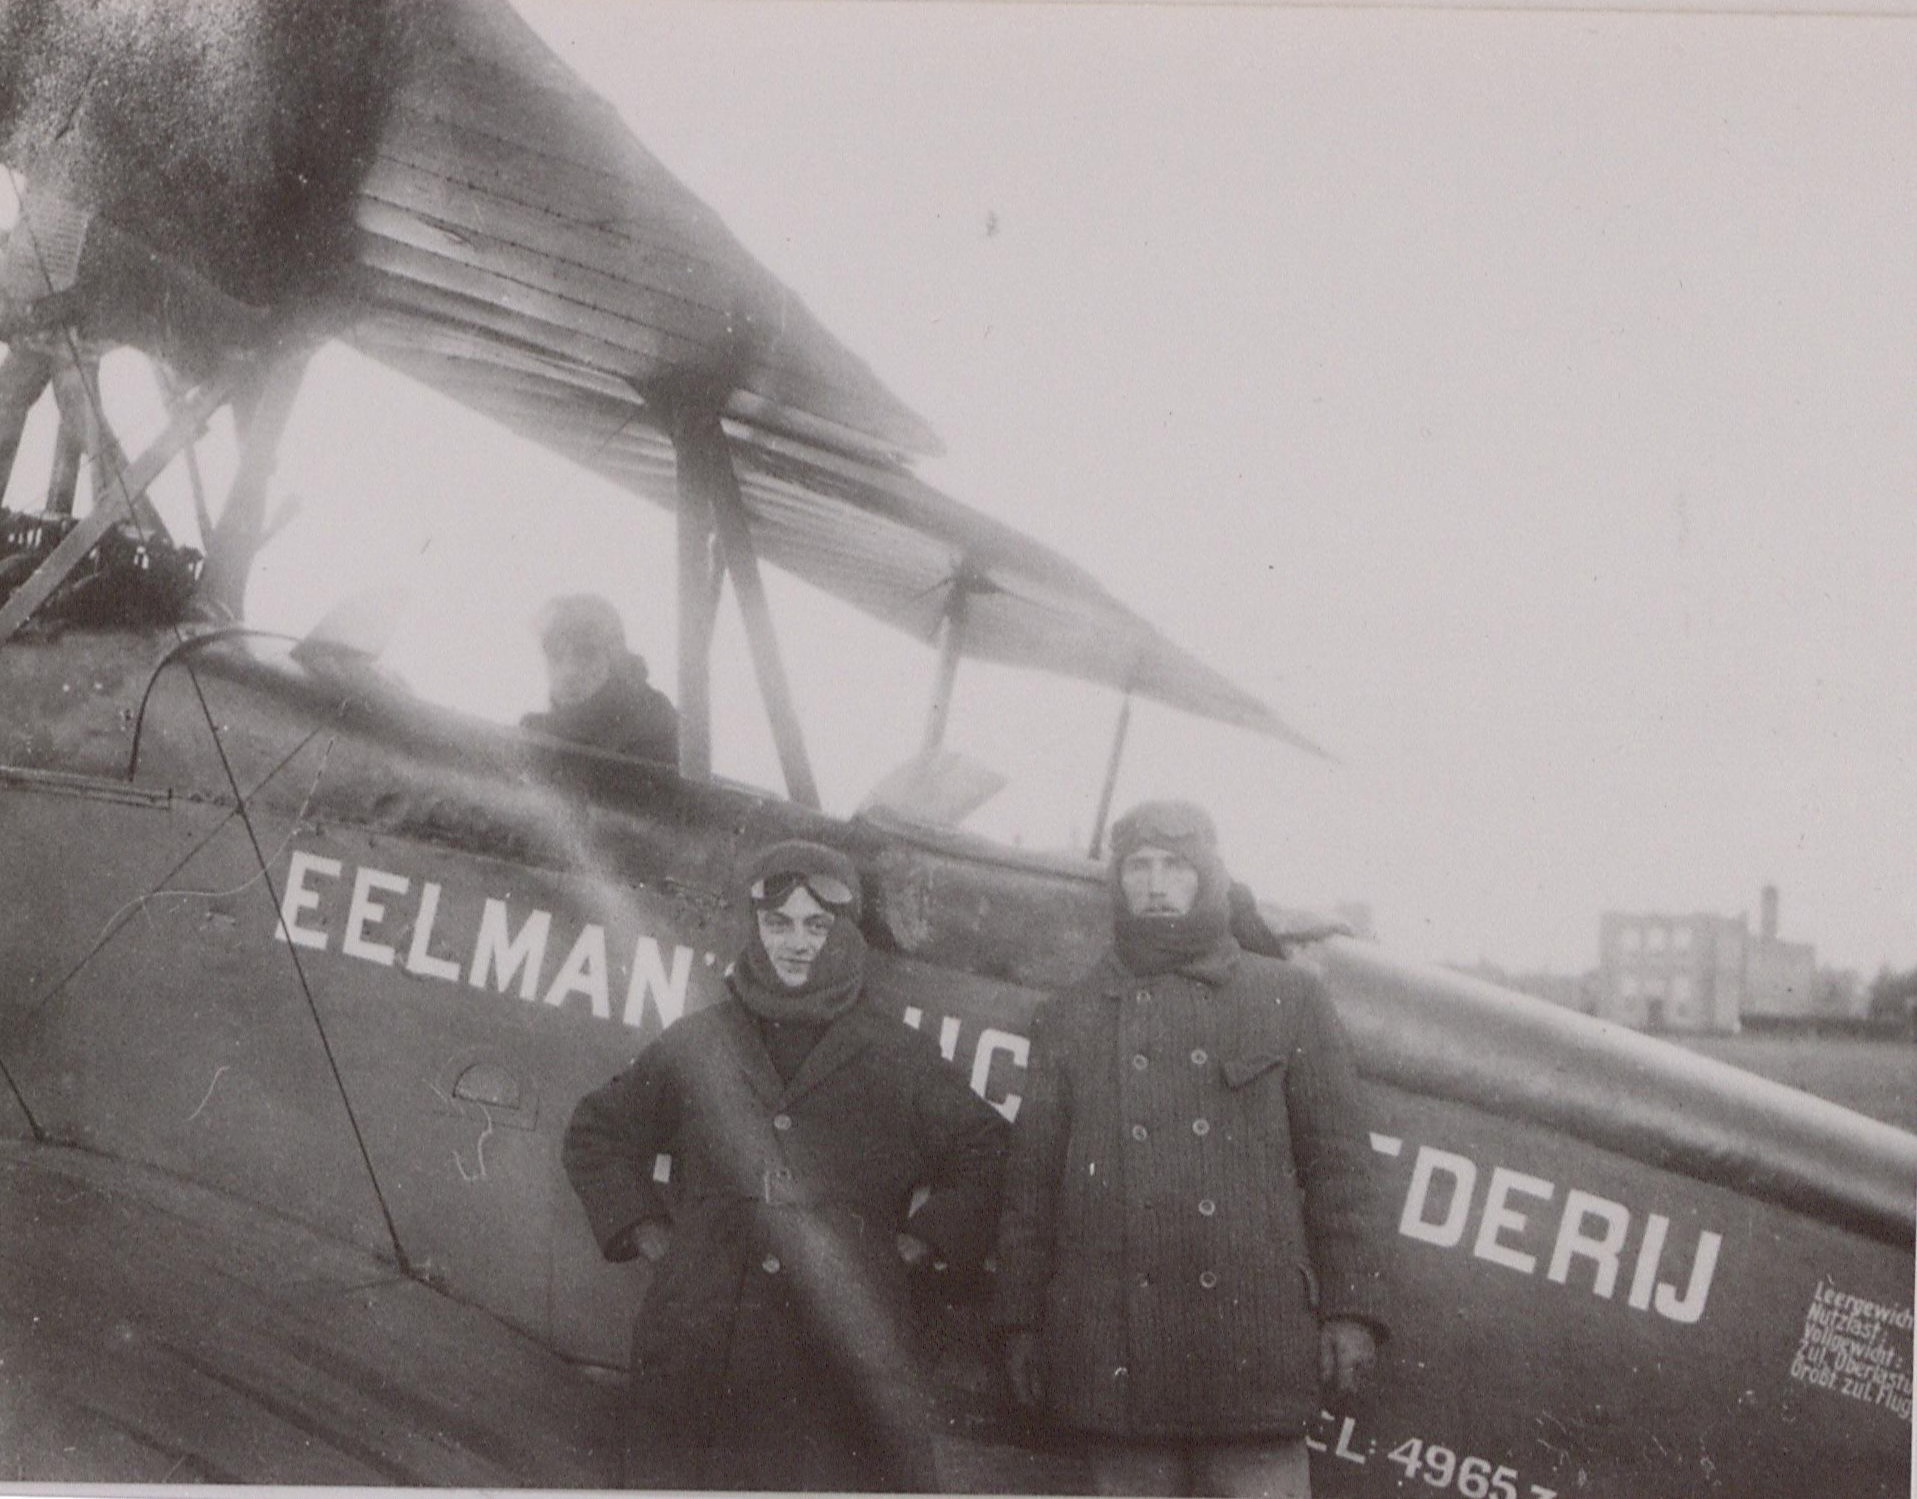 Vliegenier Van Hout en twee anderen voor een vliegtuig in Mill, waarschijnlijk aan het begin van de 20e eeuw.